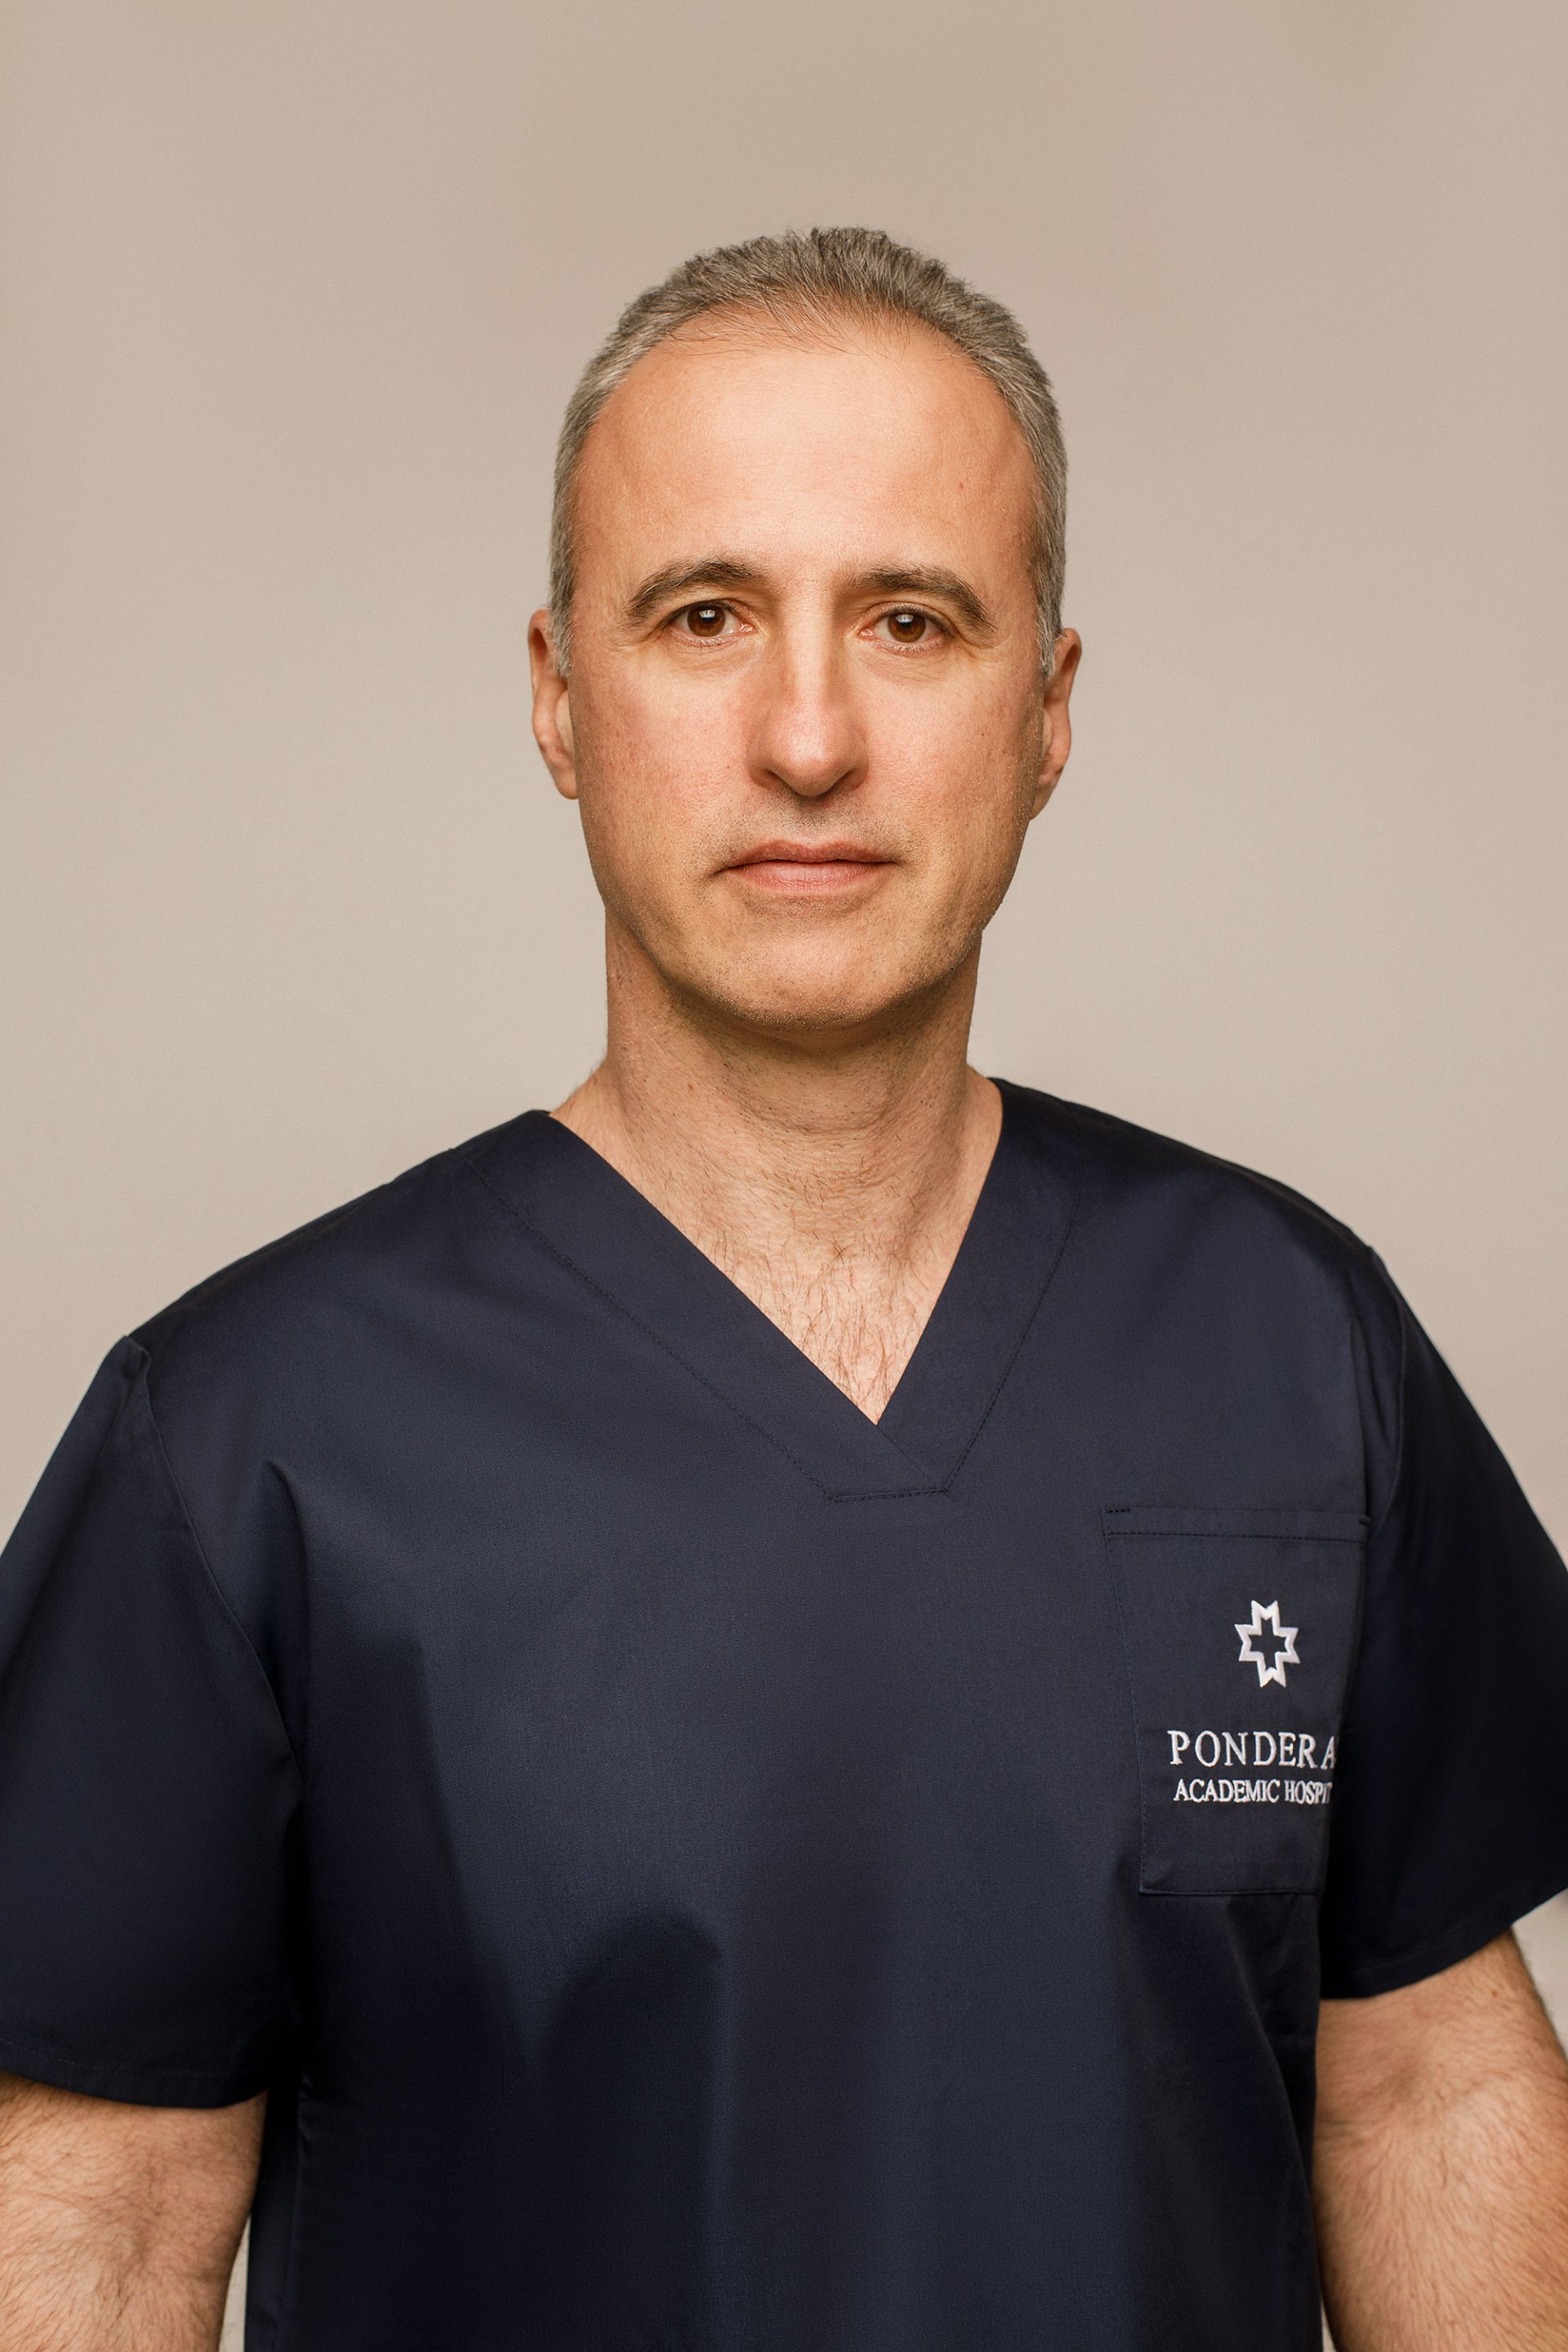 Dr. Predescu